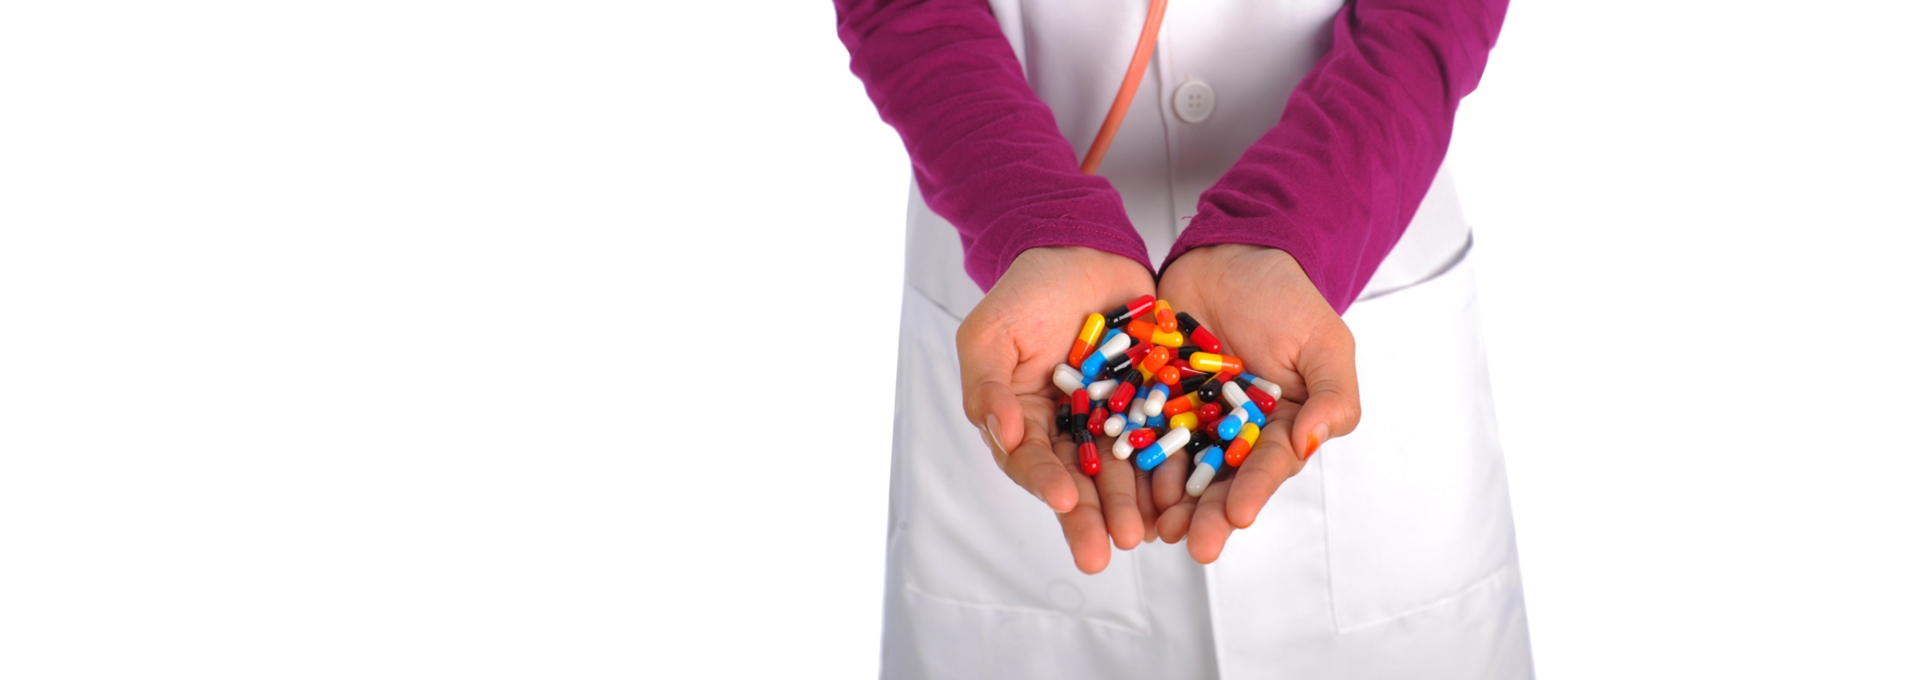 Pharmaceuticals background image.